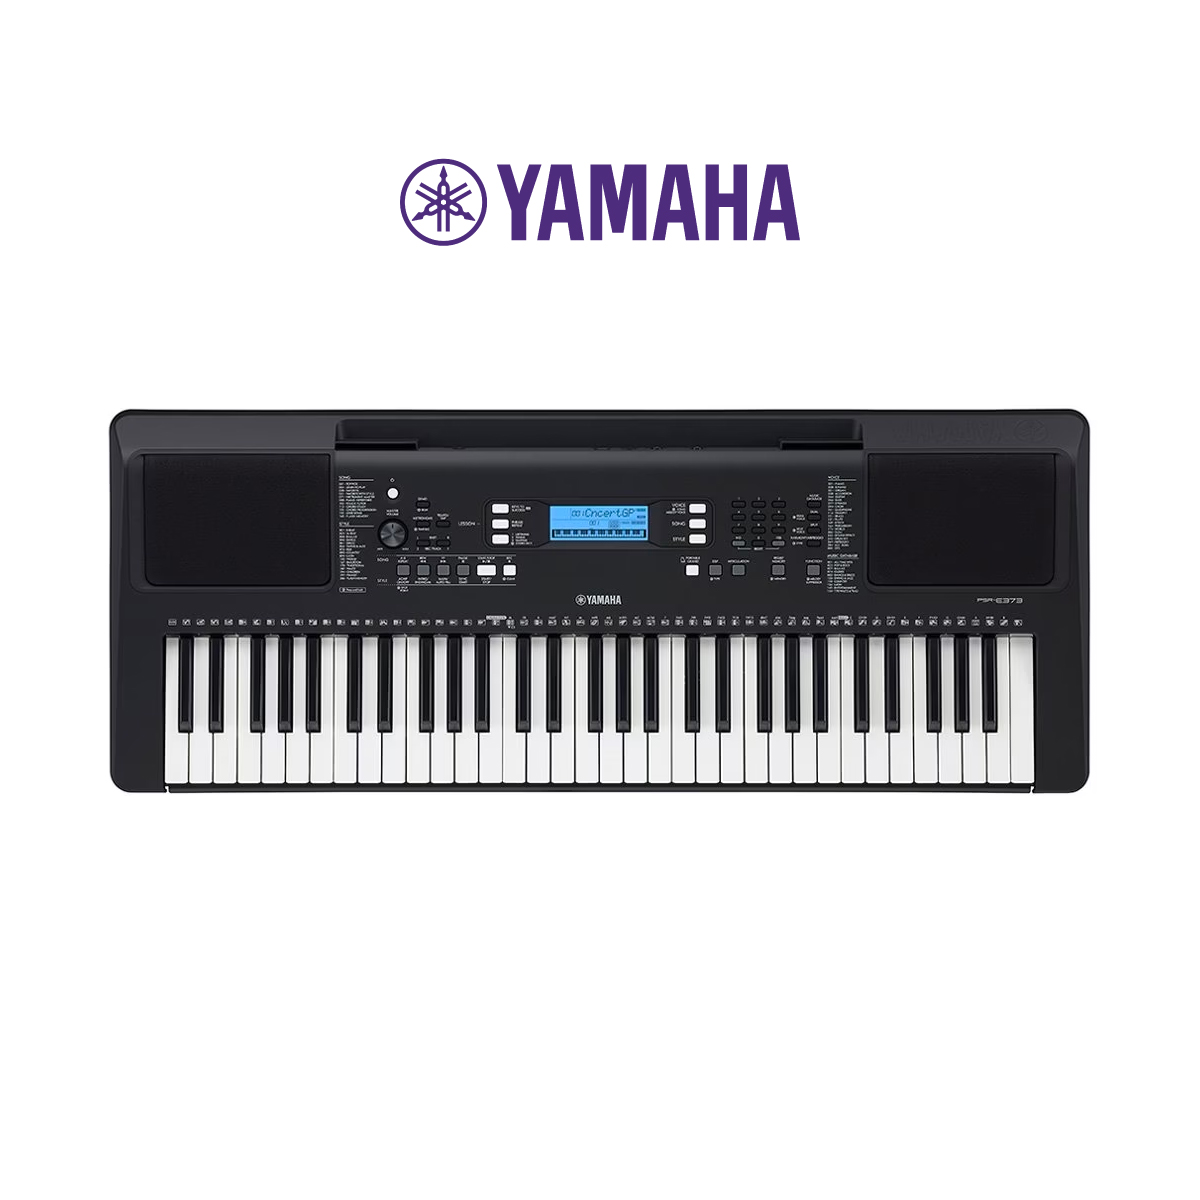 Đàn Organ điện tử, Portable Keyboard - Yamaha PSR-E373 (PSR E373) - Tiêu chuẩn mới cho nhạc cụ keyboard, organ di động - Hàng chính hãng